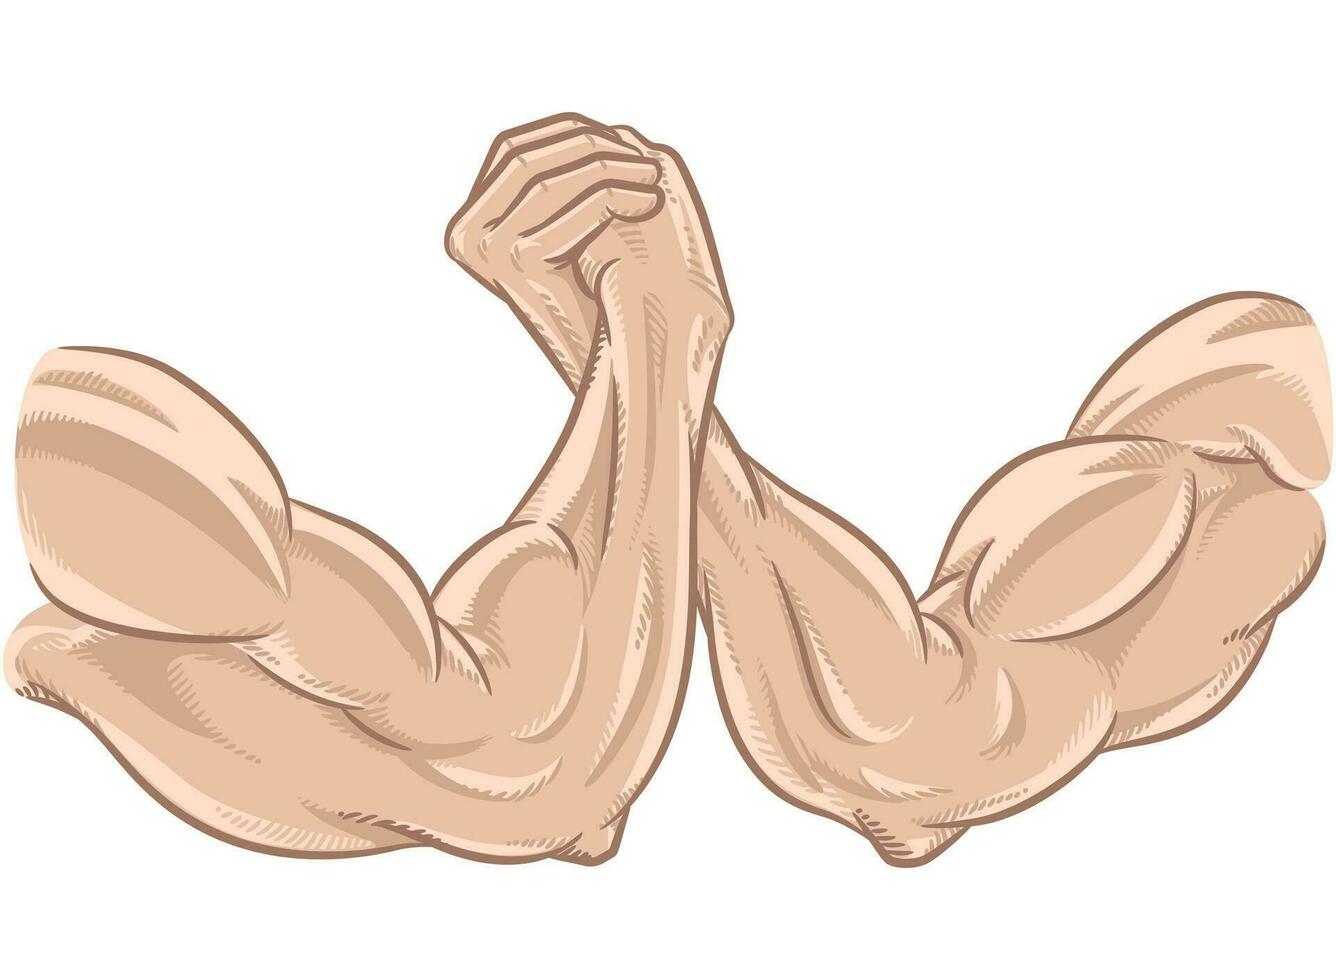 braços luta livre muscular pose brigando concorrência vetor